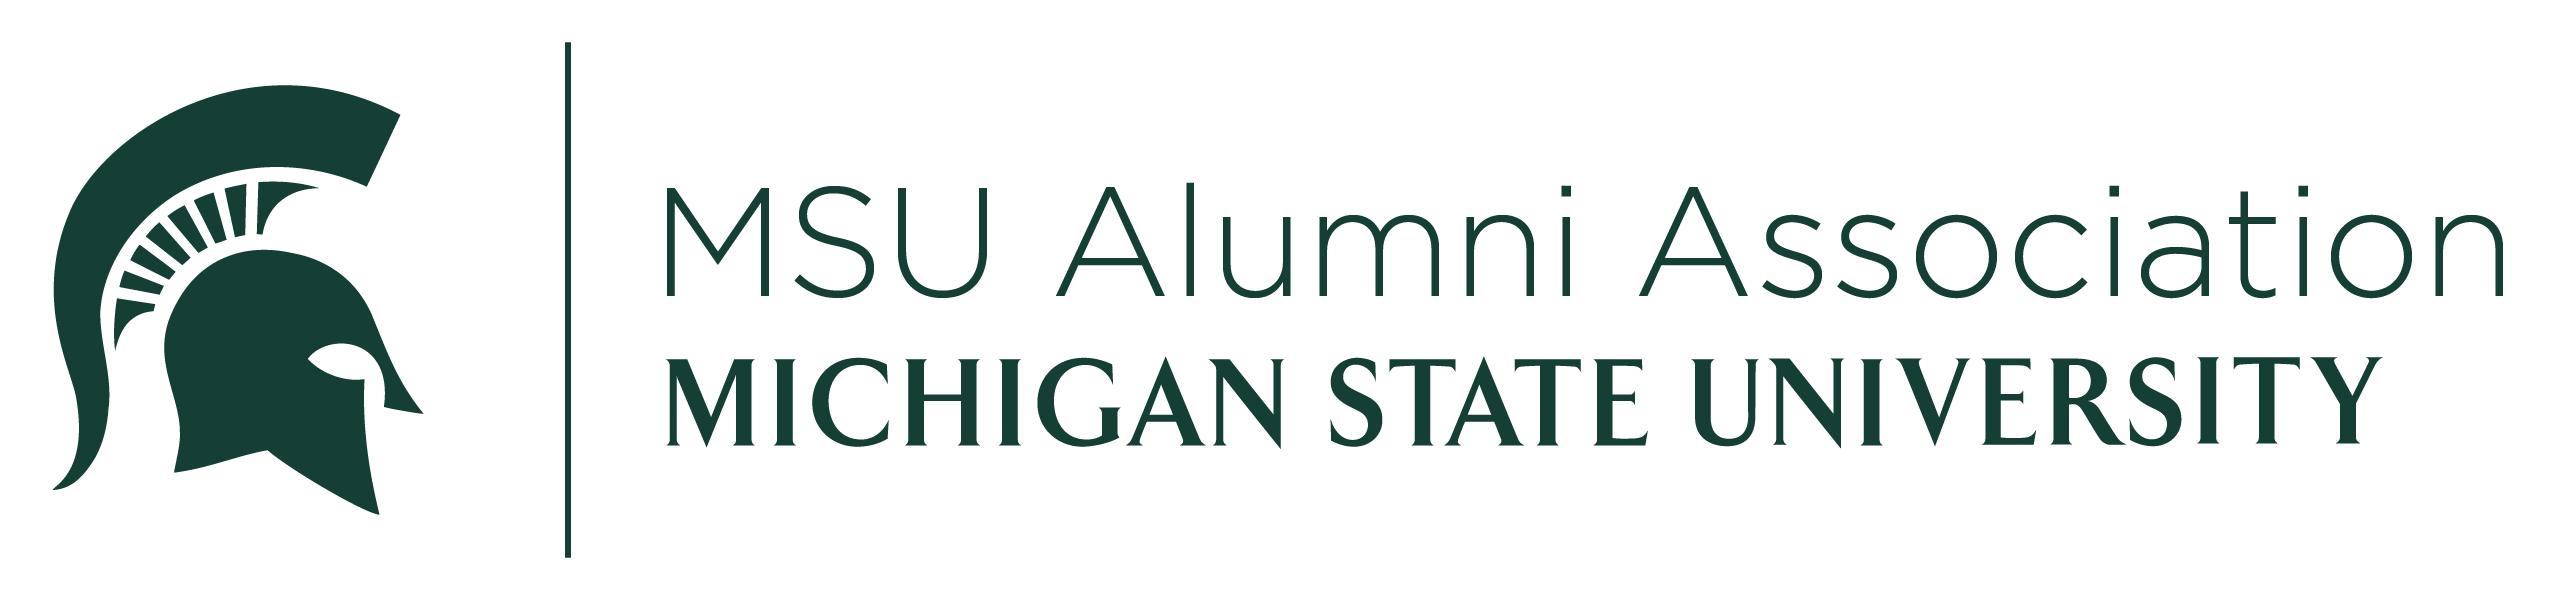 MSU Alumni Association